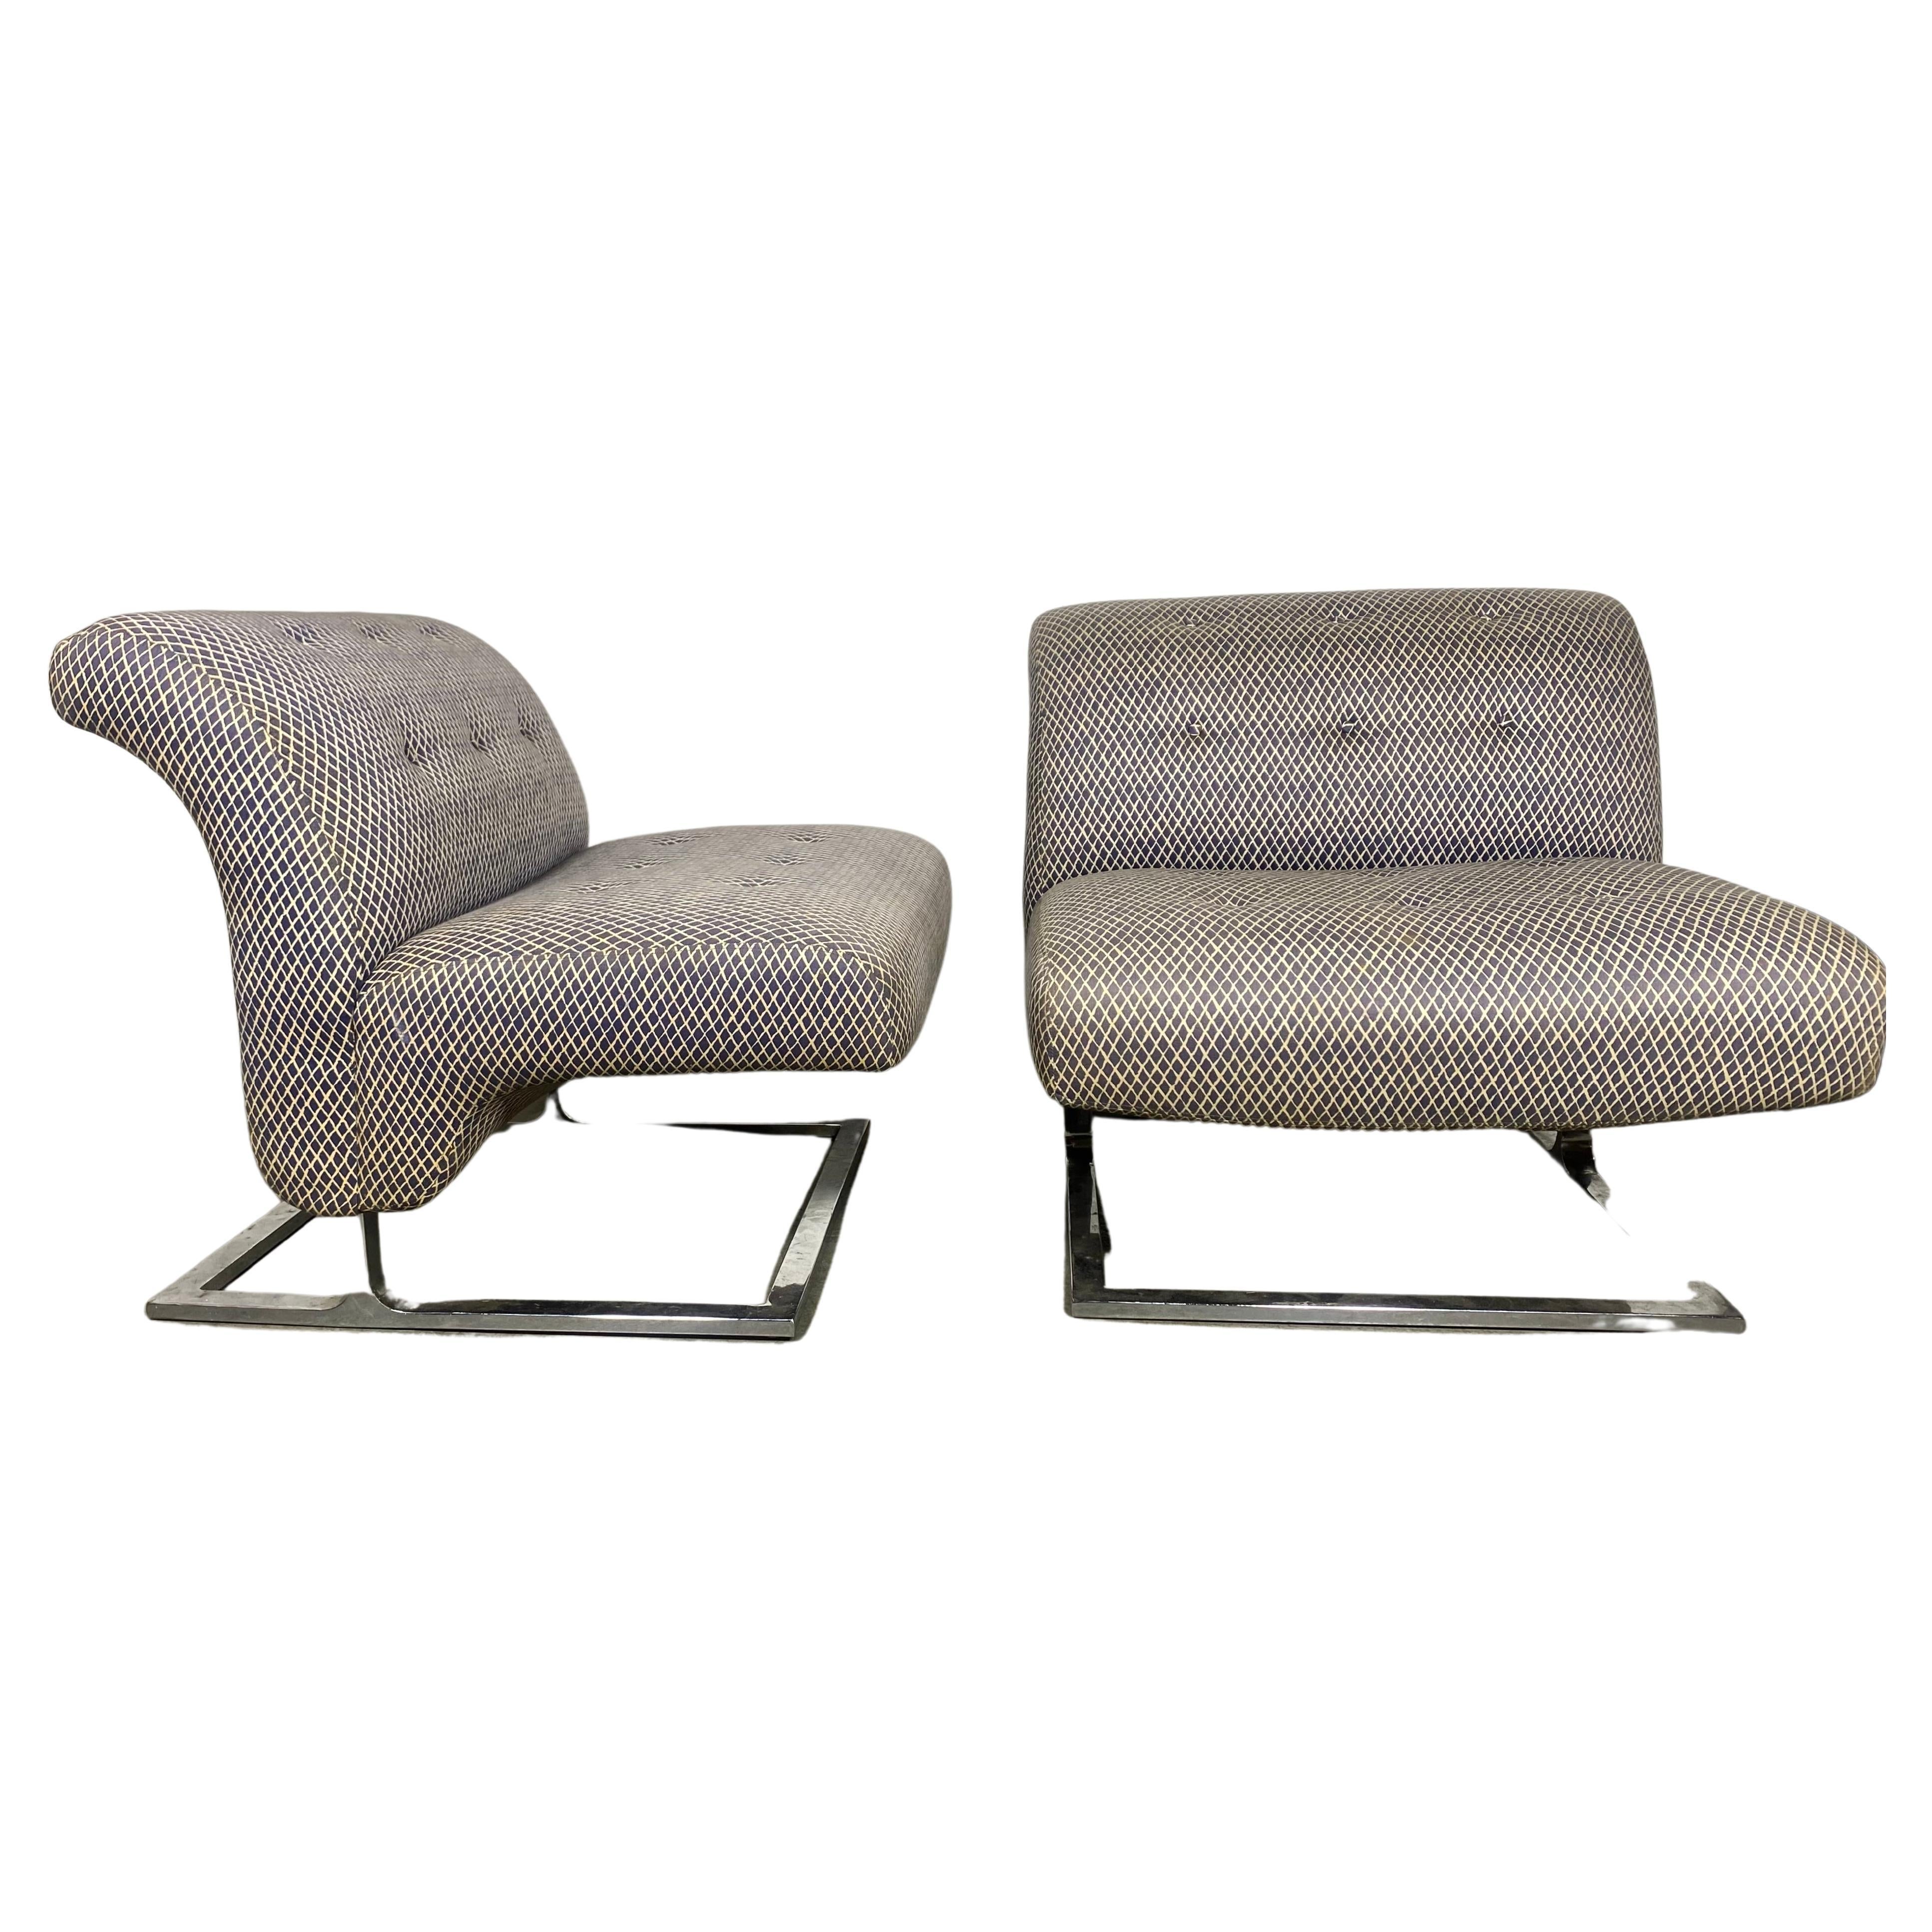 Ein sehr ungewöhnliches Paar Craft Associates Lounge Chairs mit erstaunlichen Chromfüßen. Nach einigen Recherchen scheint es, dass sie von Adrian Pearsall entworfen wurden. Behalten Sie die Original-Pop-Modernisten-Polsterung... schöner